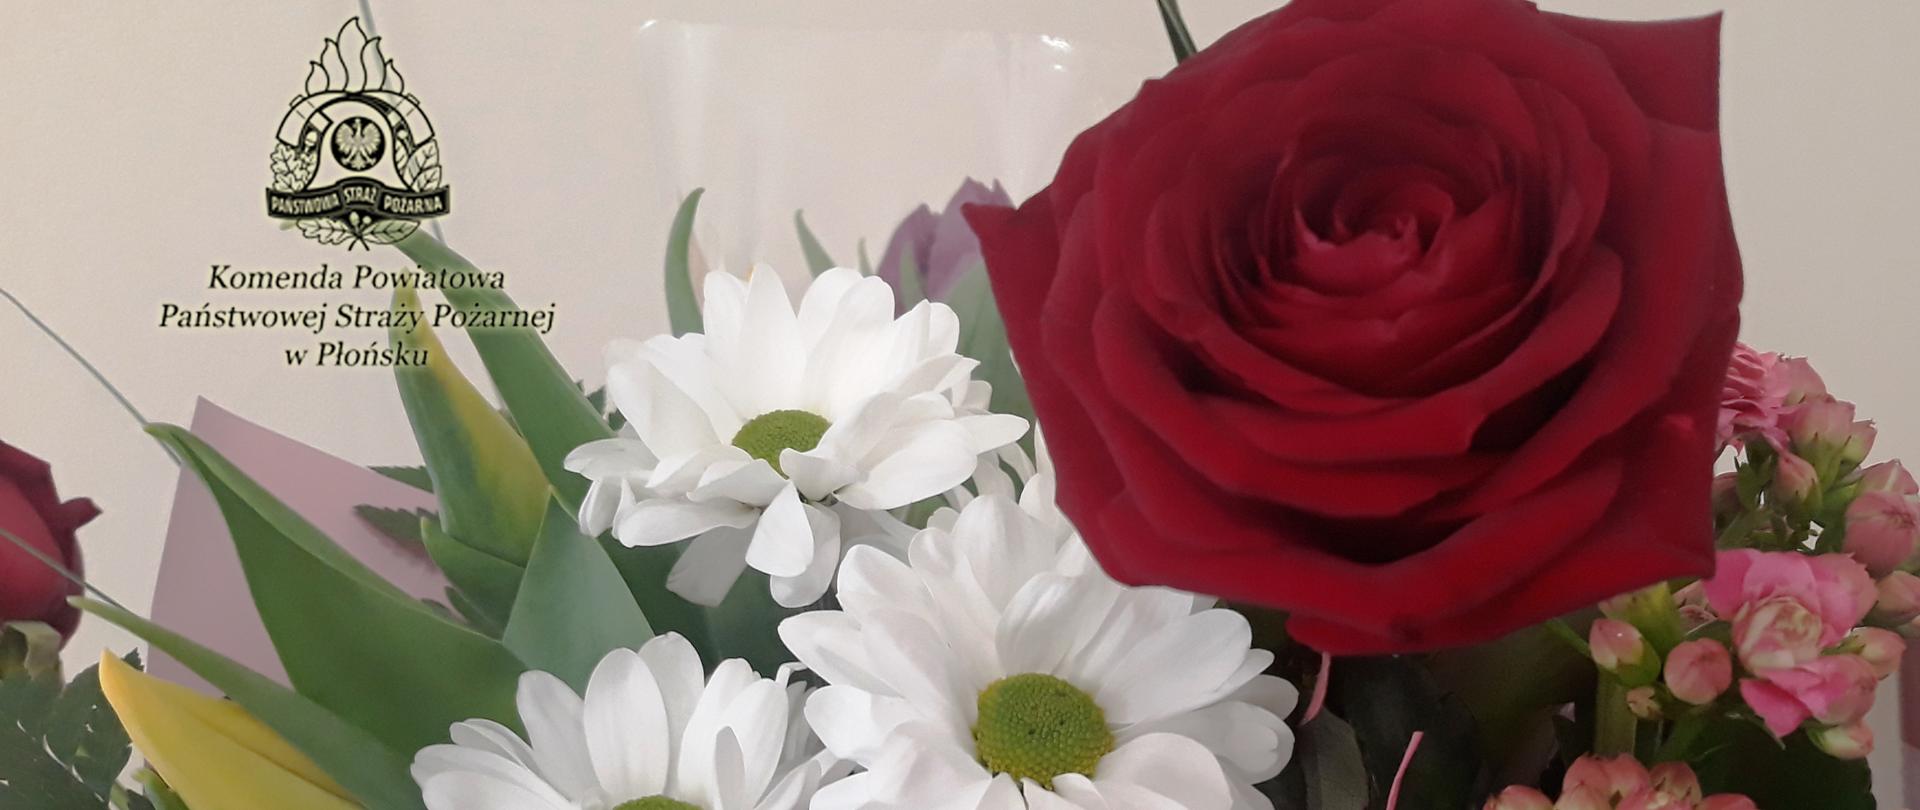 Kwiaty - z prawej czerwona róża, z lewej białe kwiaty rumianku.